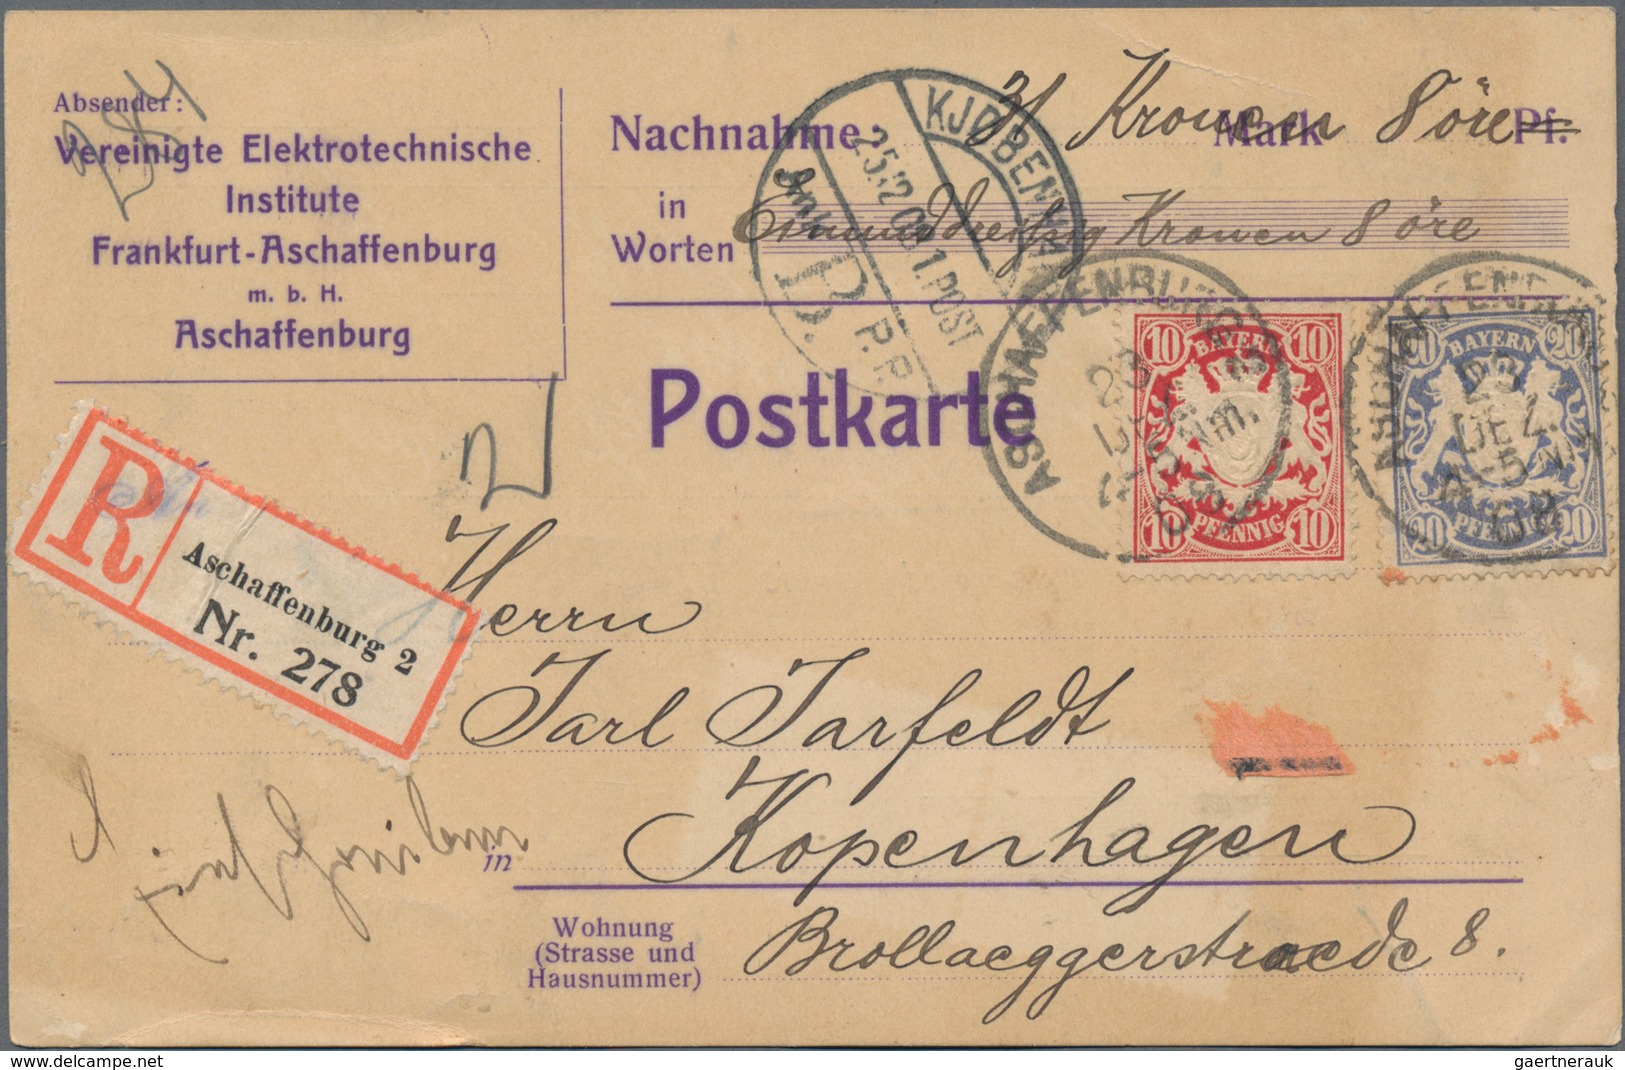 Deutschland: 1880/1960, kleiner Nachlass von insgesamt über 130 Belegen, meist nach Dänemark adressi